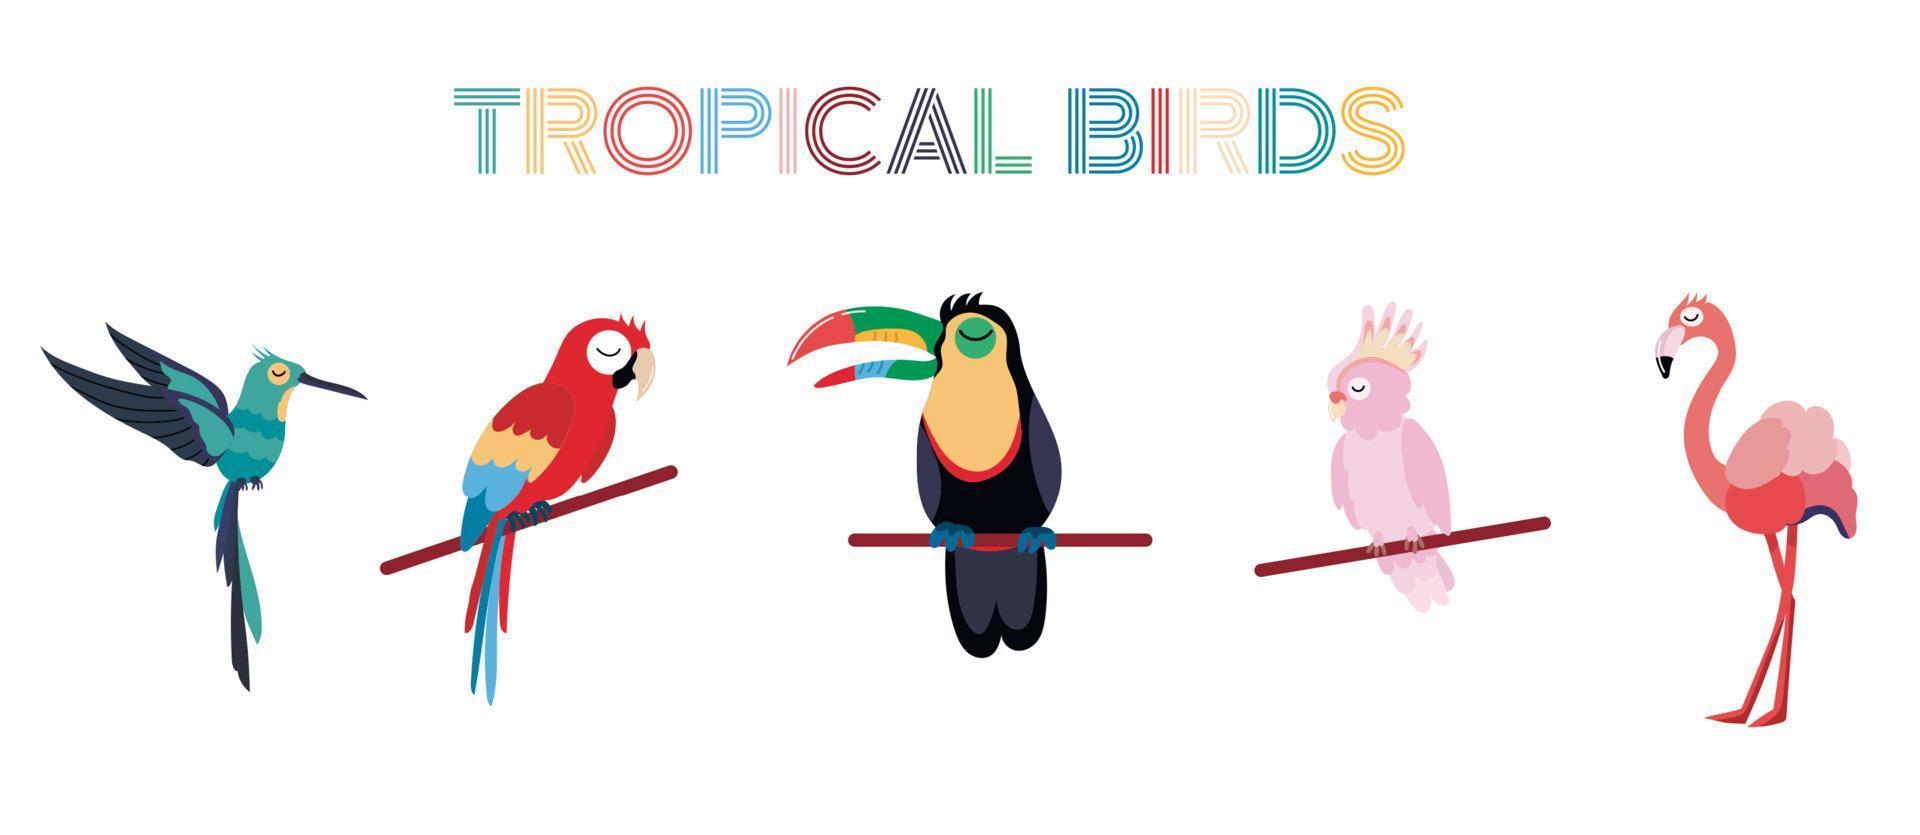 conjunto de pássaros tropicais, incluindo papagaio ara, cacatua rosa, flamingo, tucano, beija-flor. coleção de pássaros exóticos em fundo branco. ilustração vetorial plana. vetor